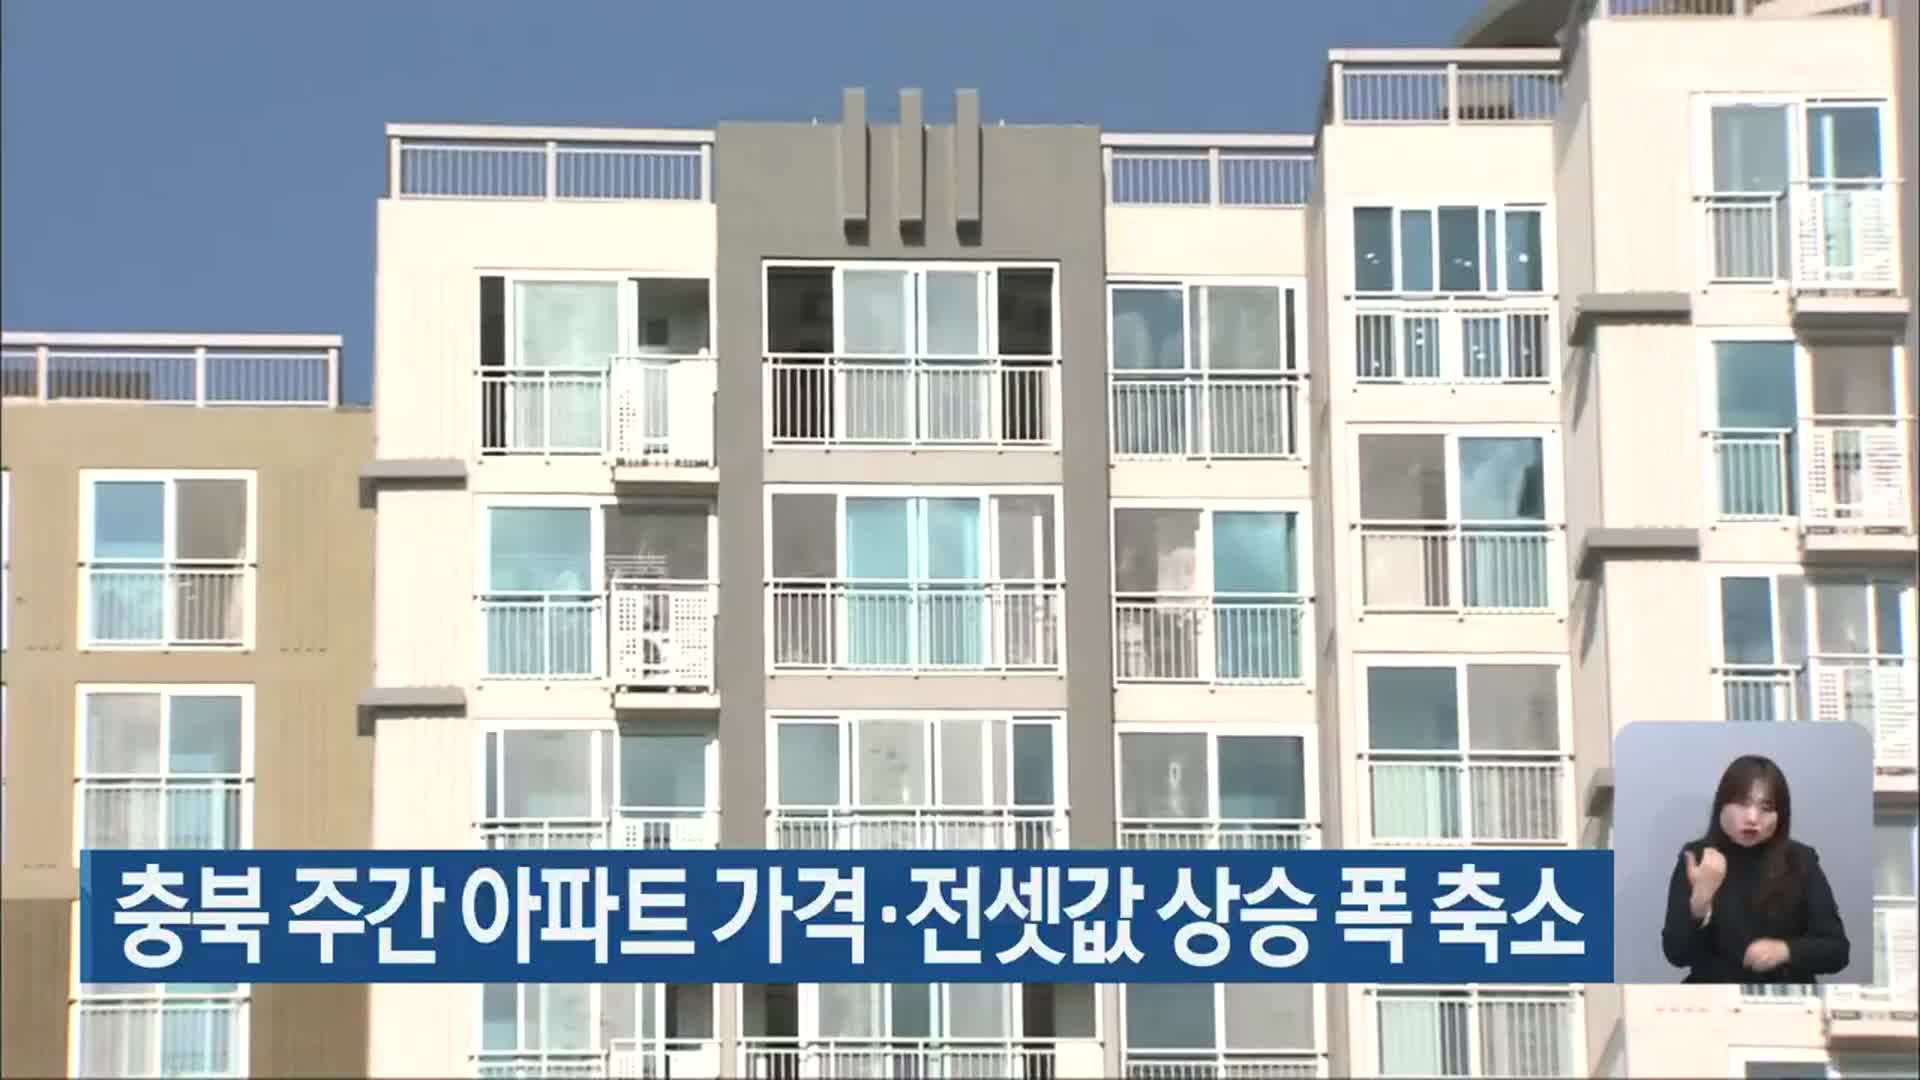 충북 주간 아파트 가격·전셋값 상승 폭 축소